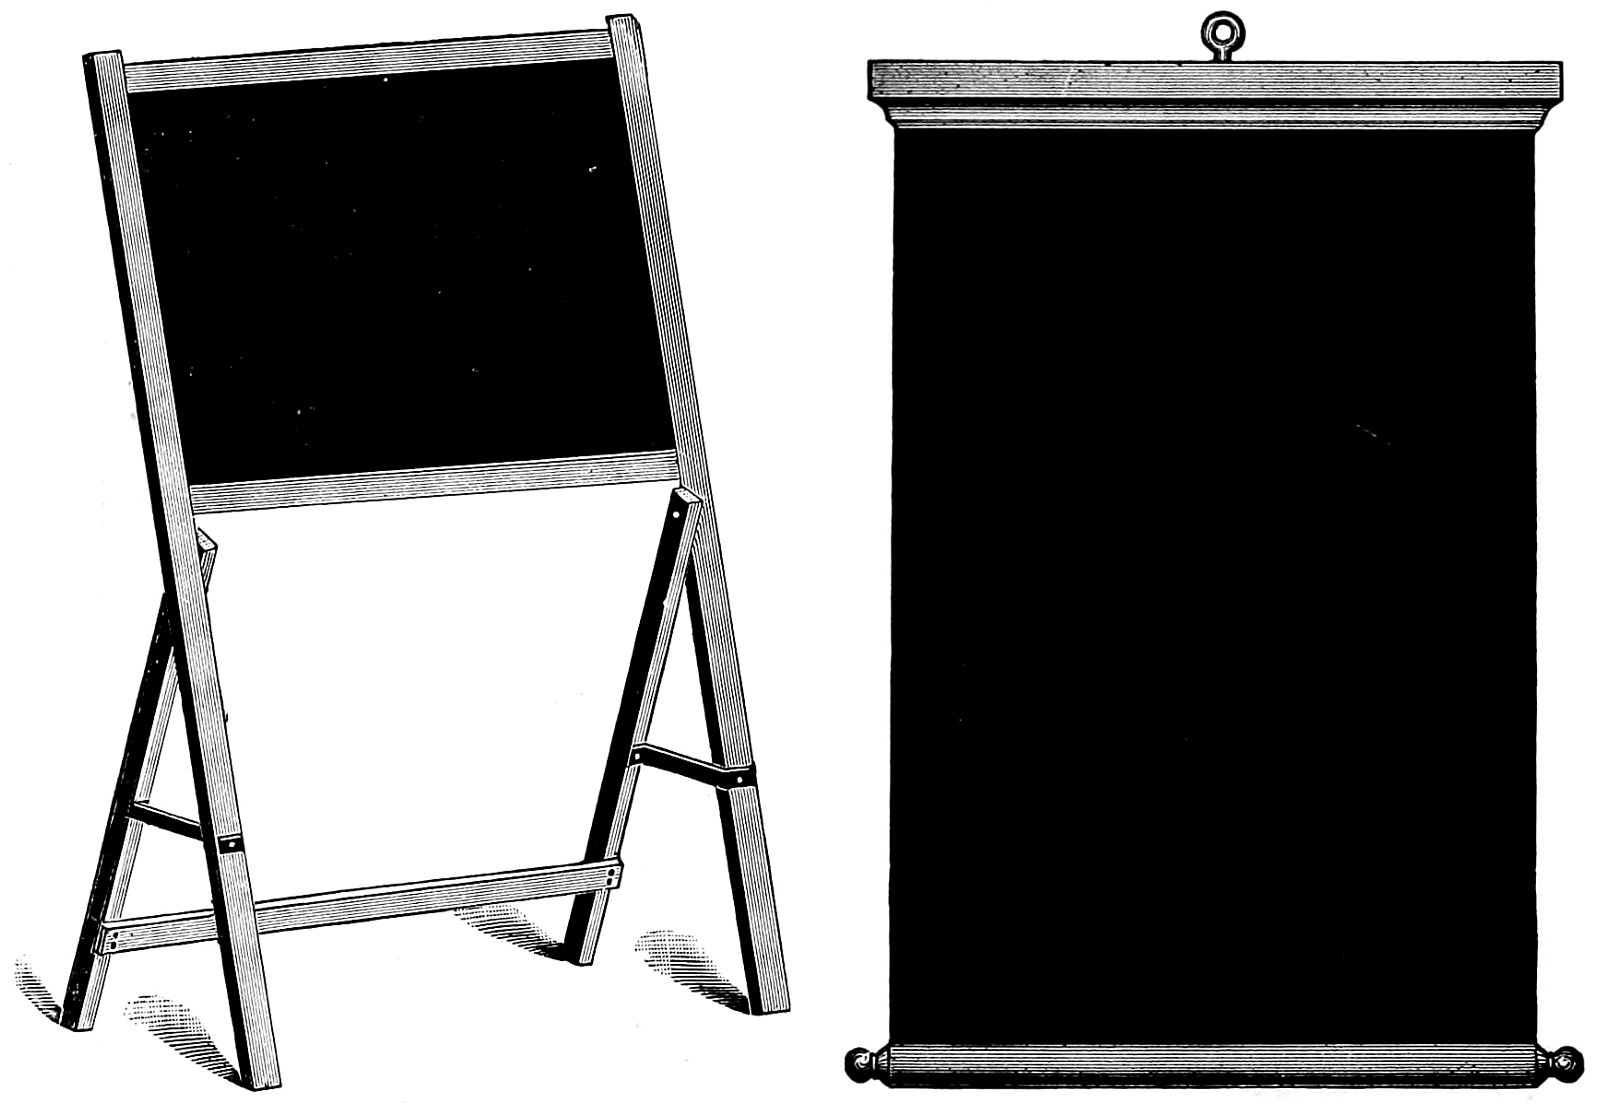 Blackboards